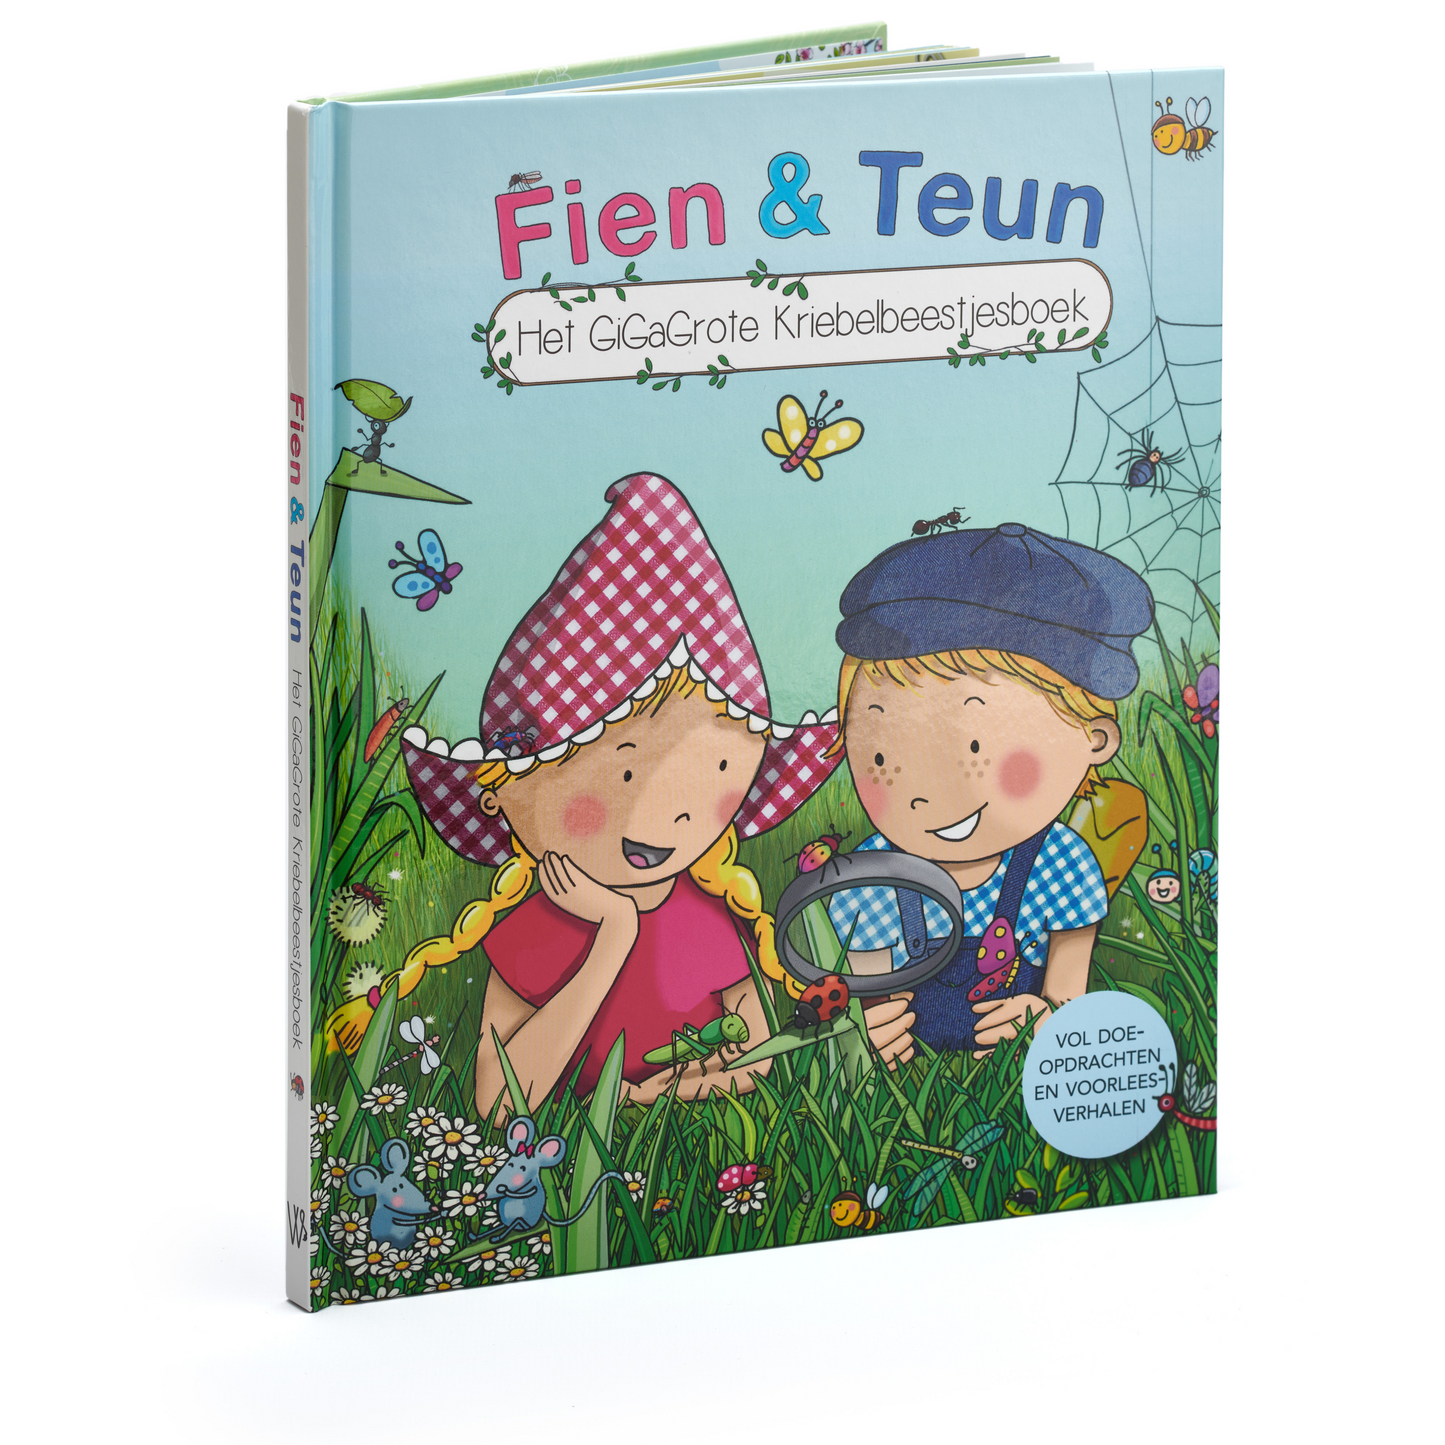 Fien & Teun - The giant creepy-crawlies book